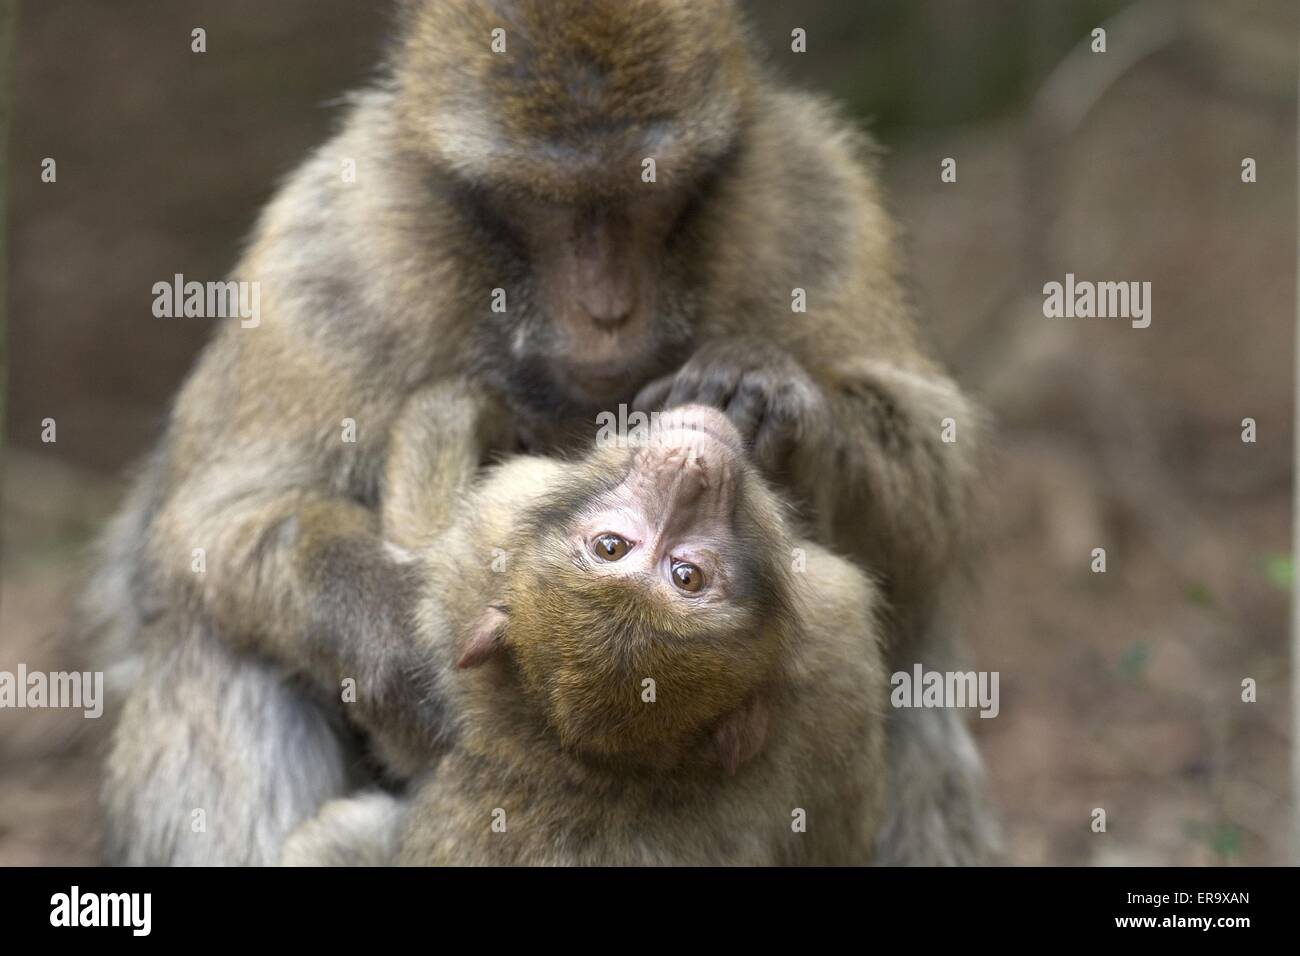 barbary apes Stock Photo